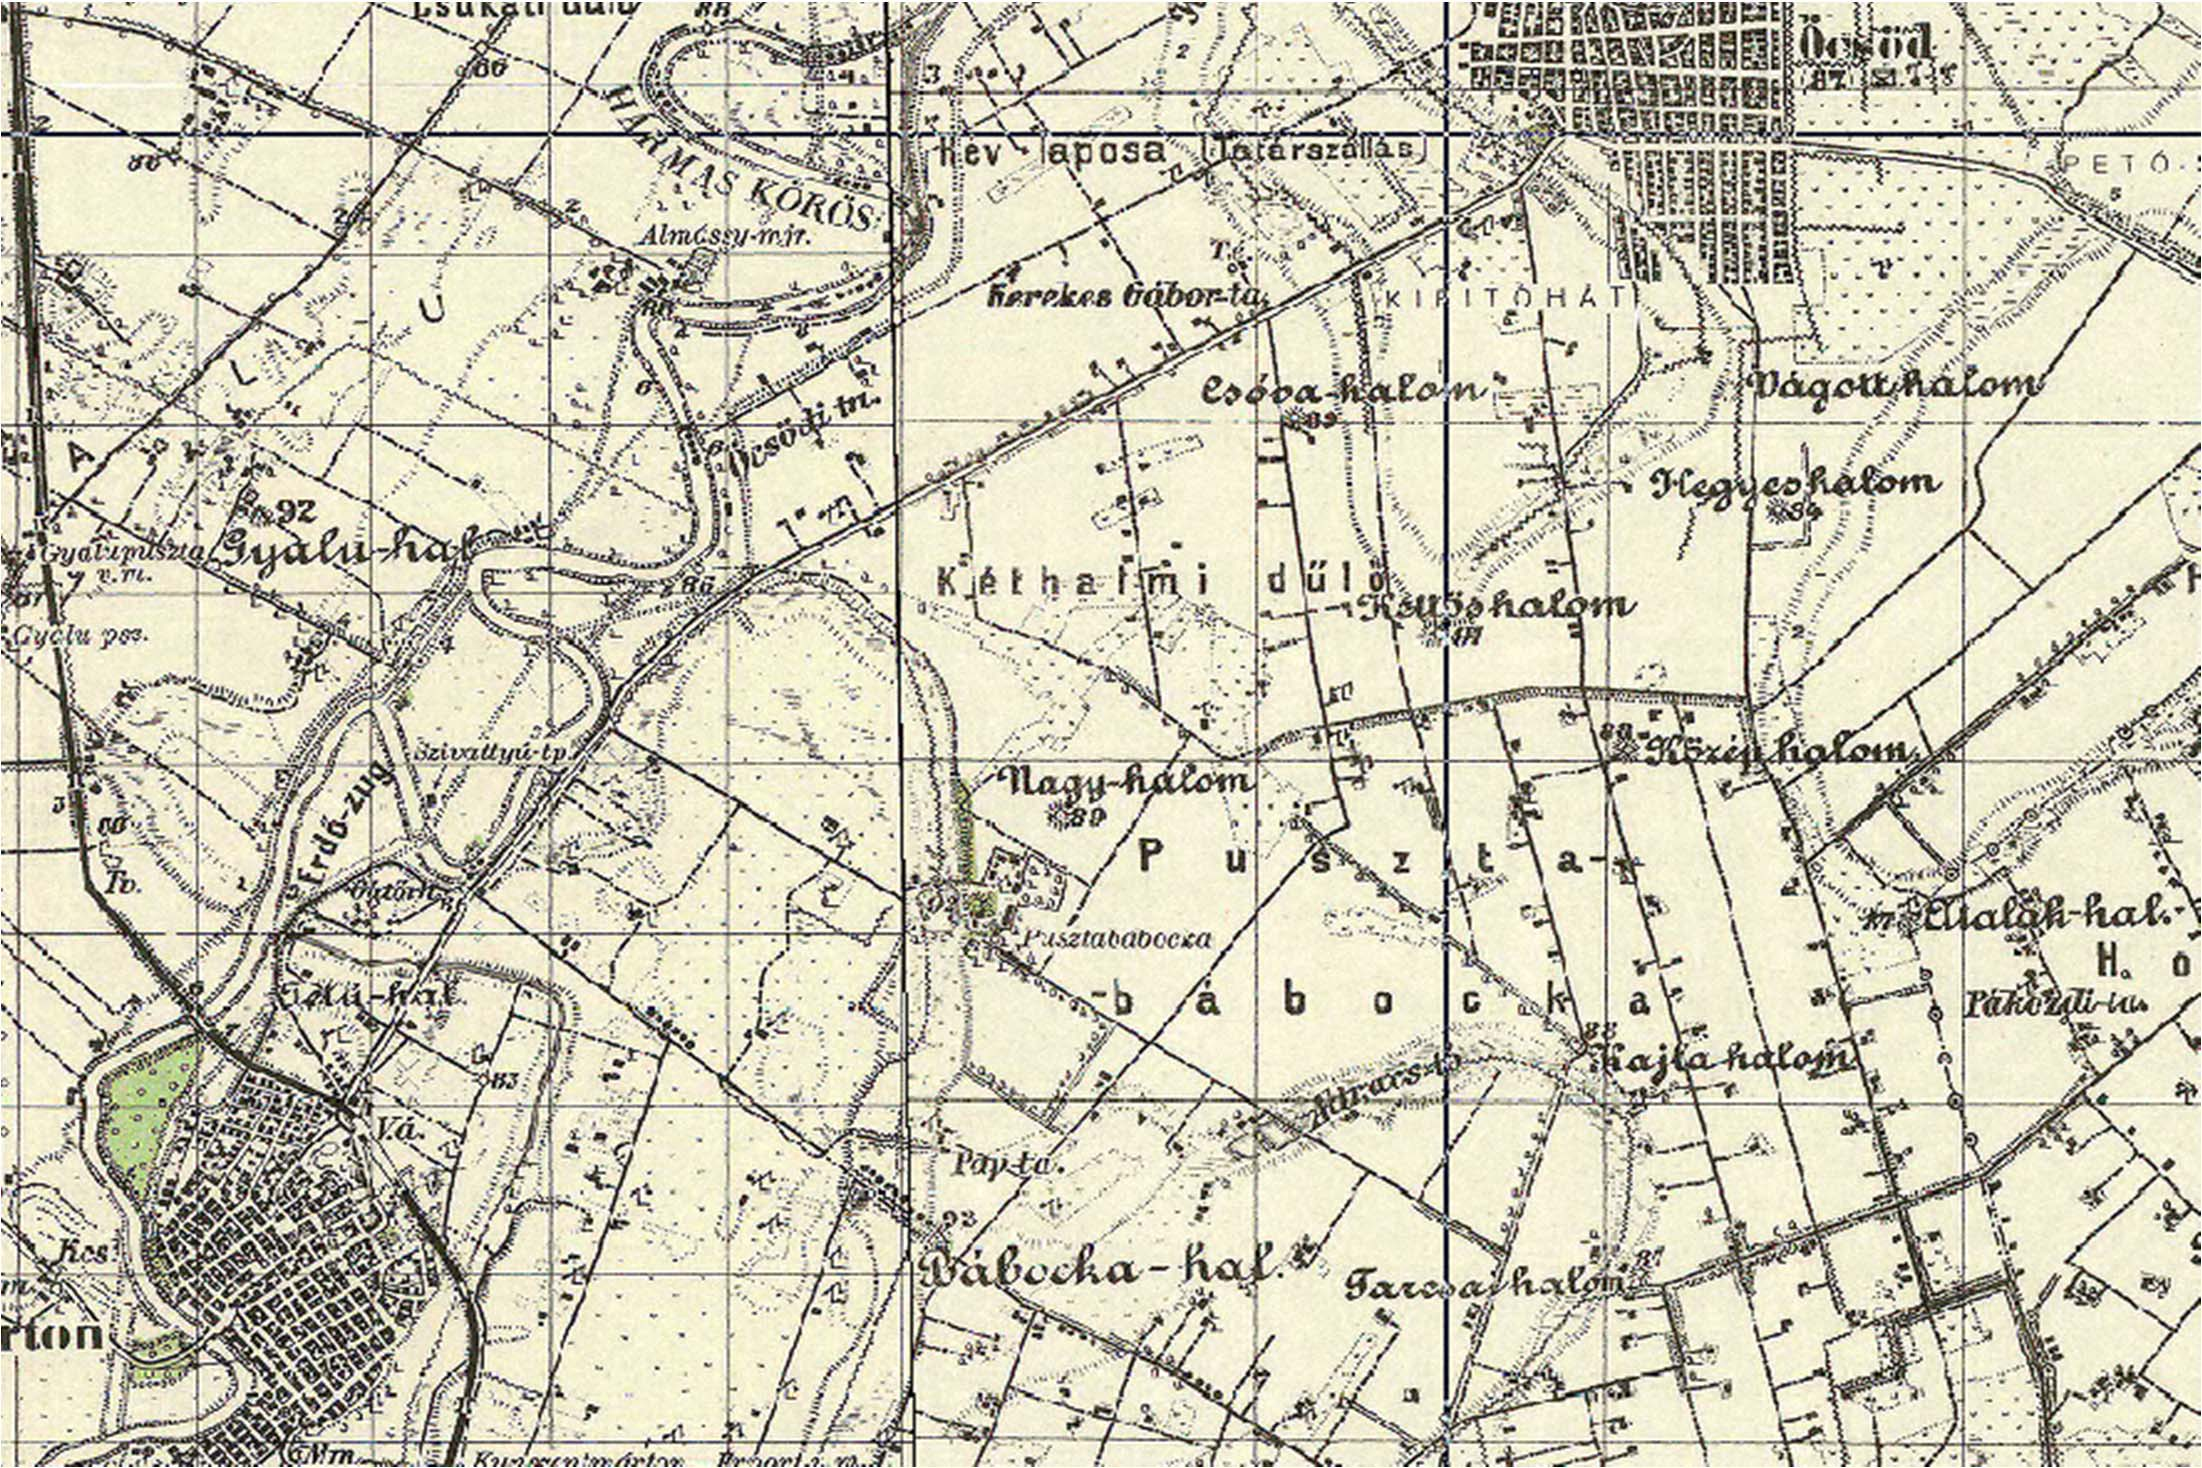 Pusztabábocka tezauruszcikkének térképi környezete az 1944-es katonai felmérésen nagyobb egysége Öcsöd részei